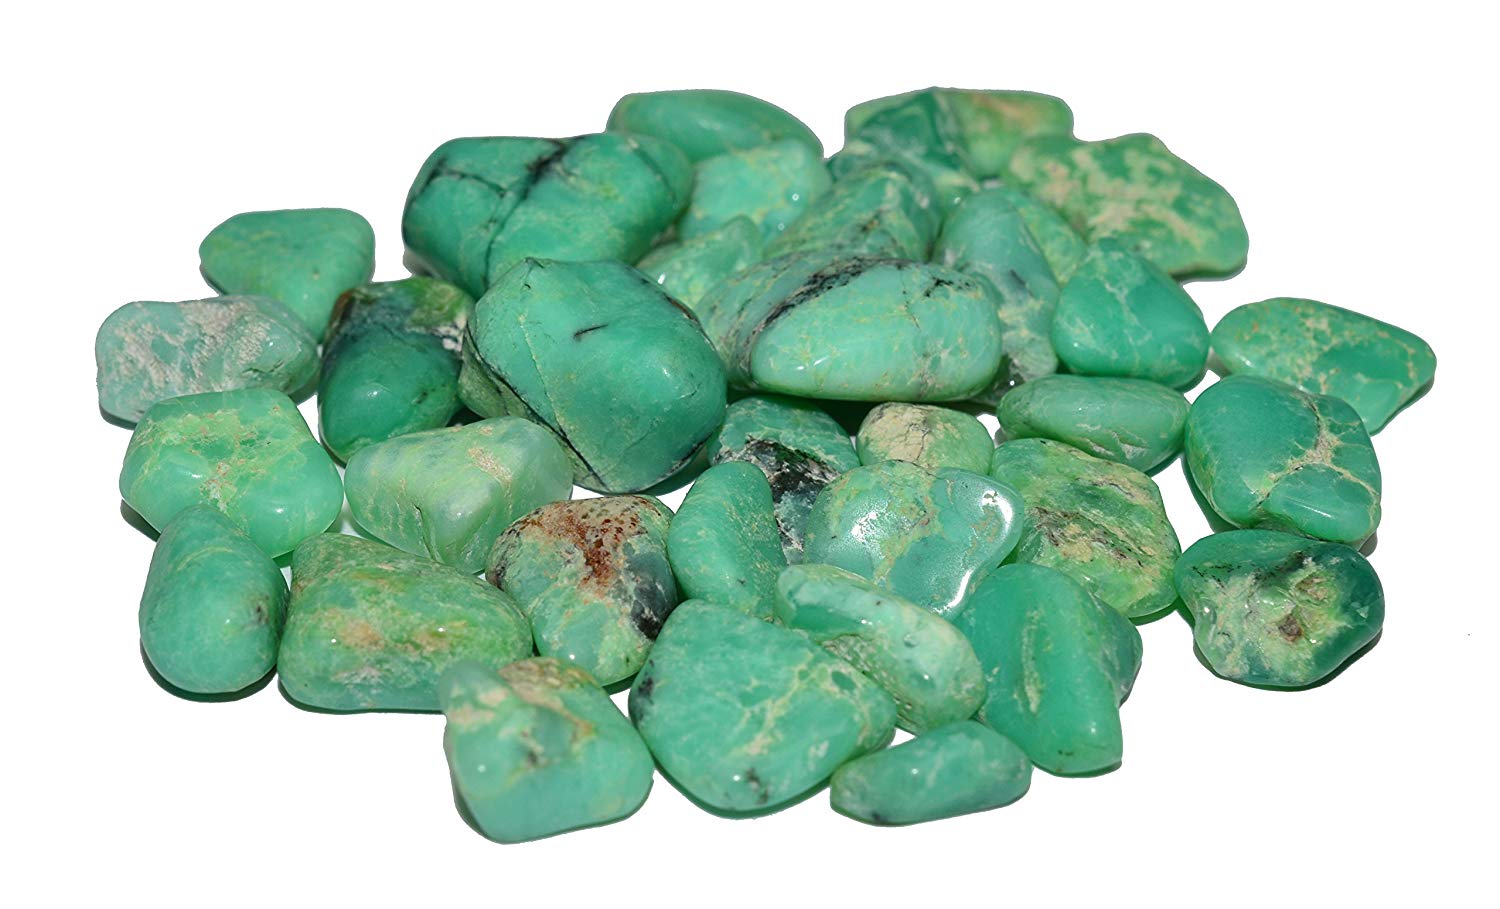 Crisoprasa comprar barata baratas precio precios calzedonia piedra calzedonia mineral